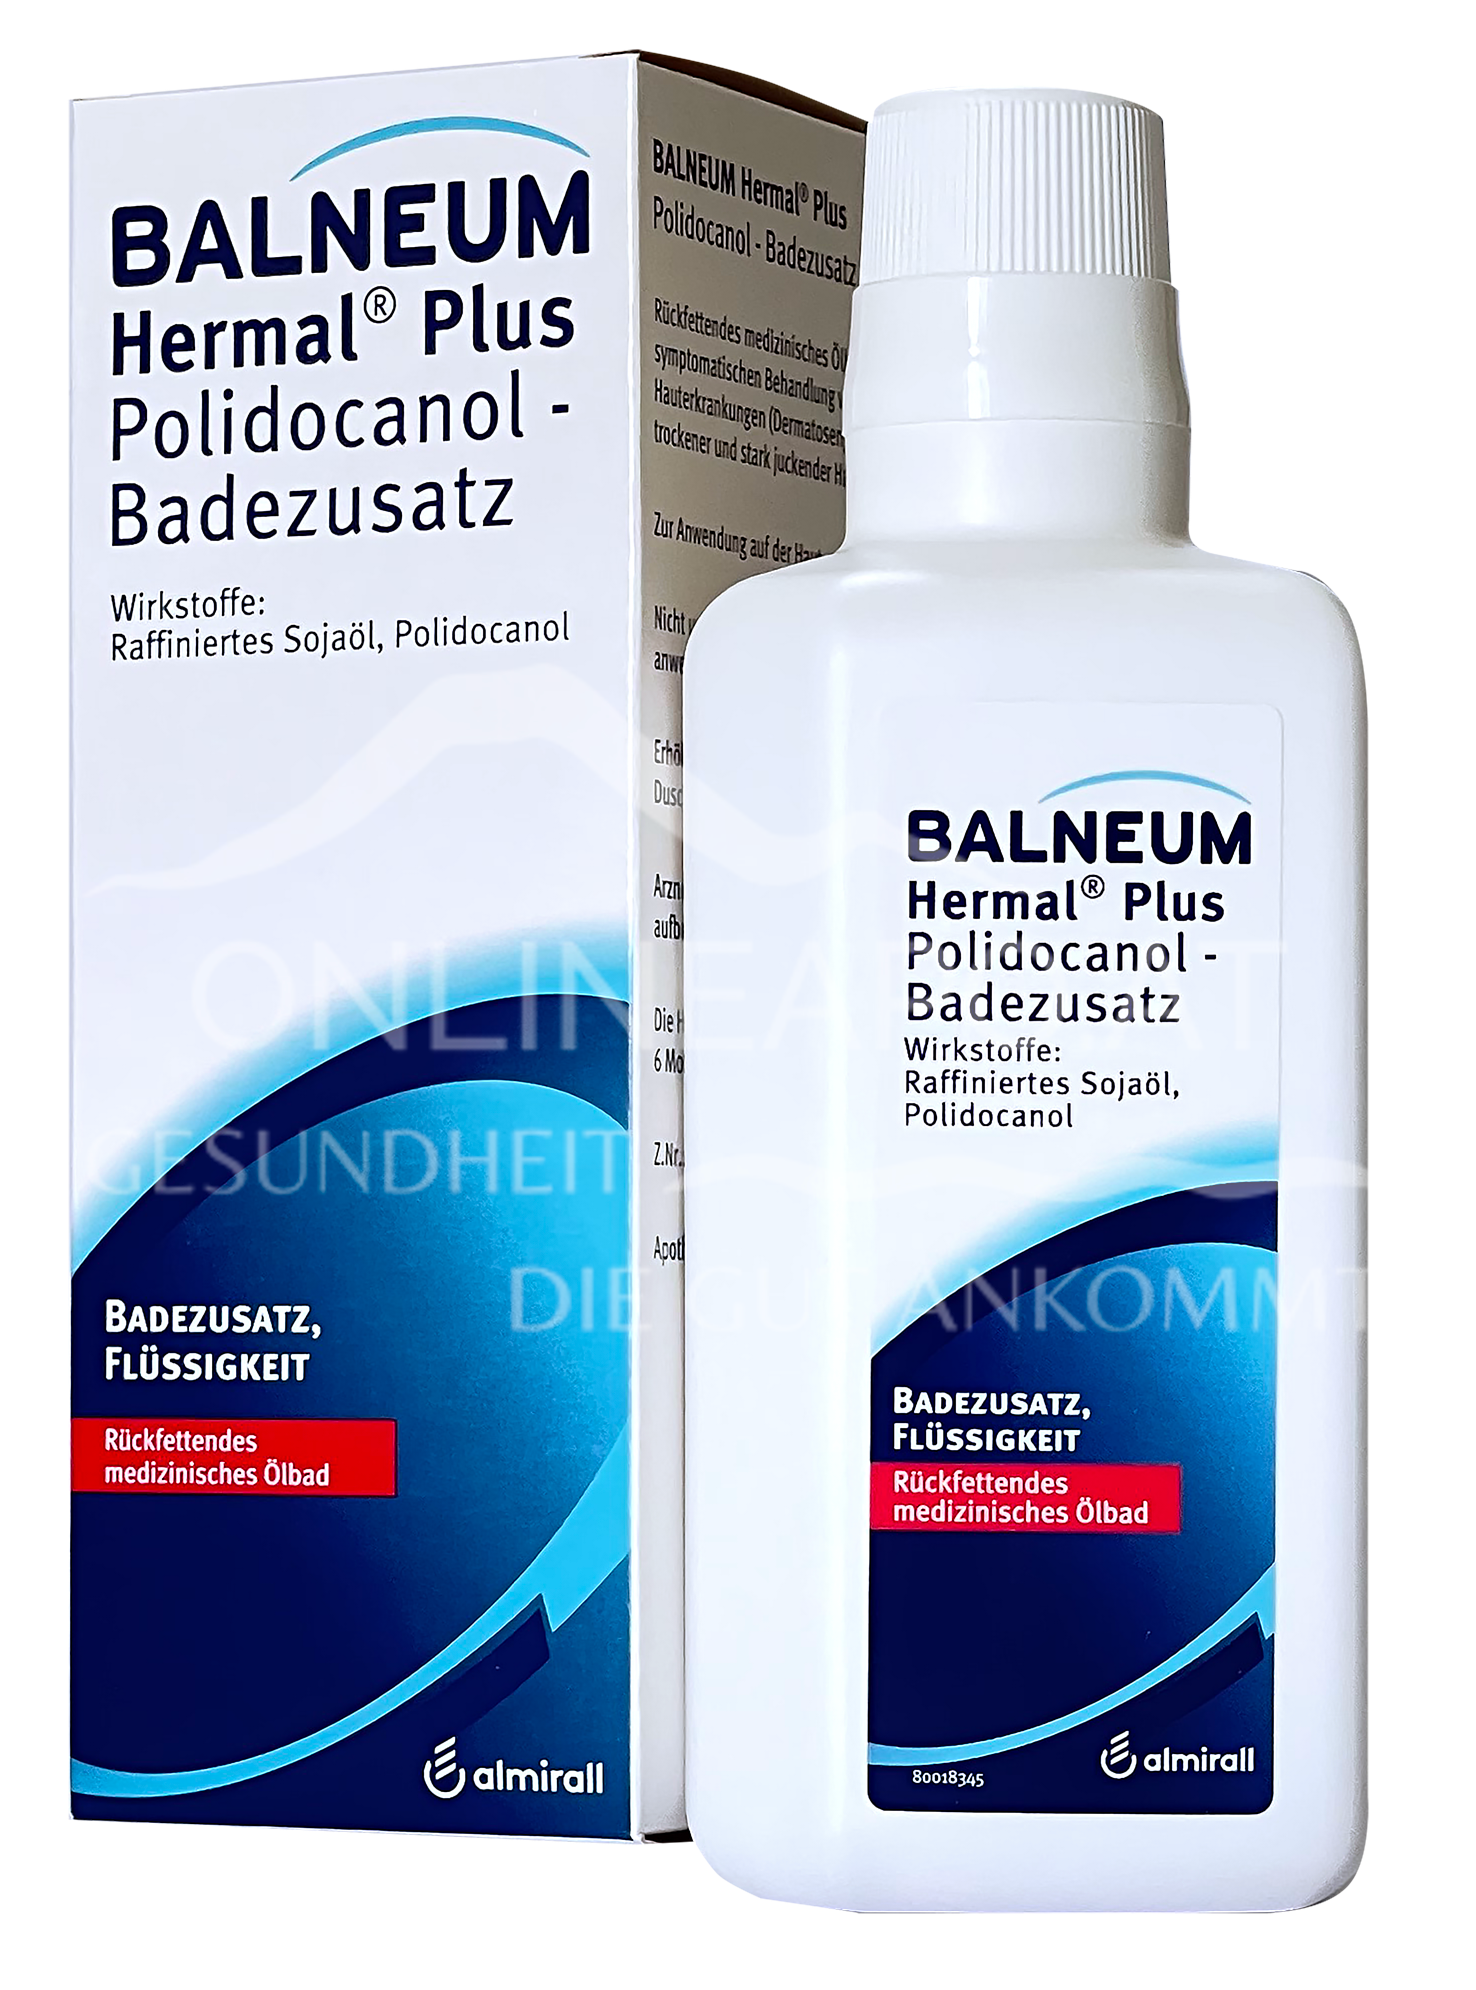 Balneum Hermal Plus Polidocanol Badezusatz